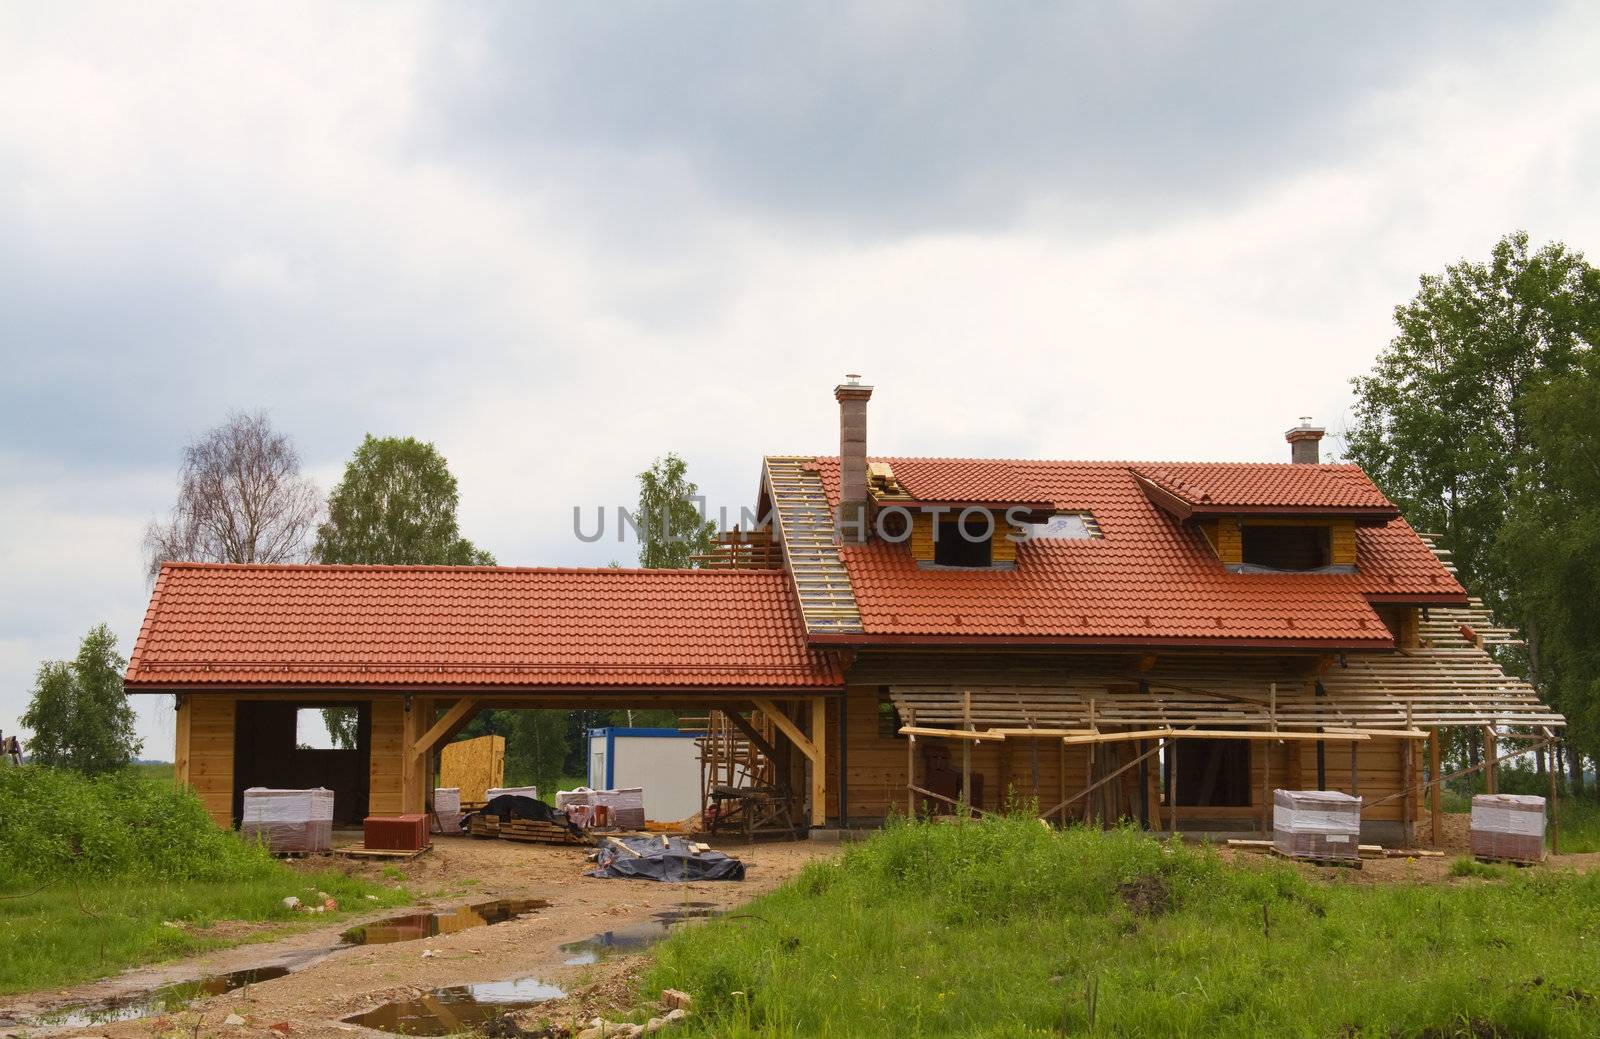 Cottage construction